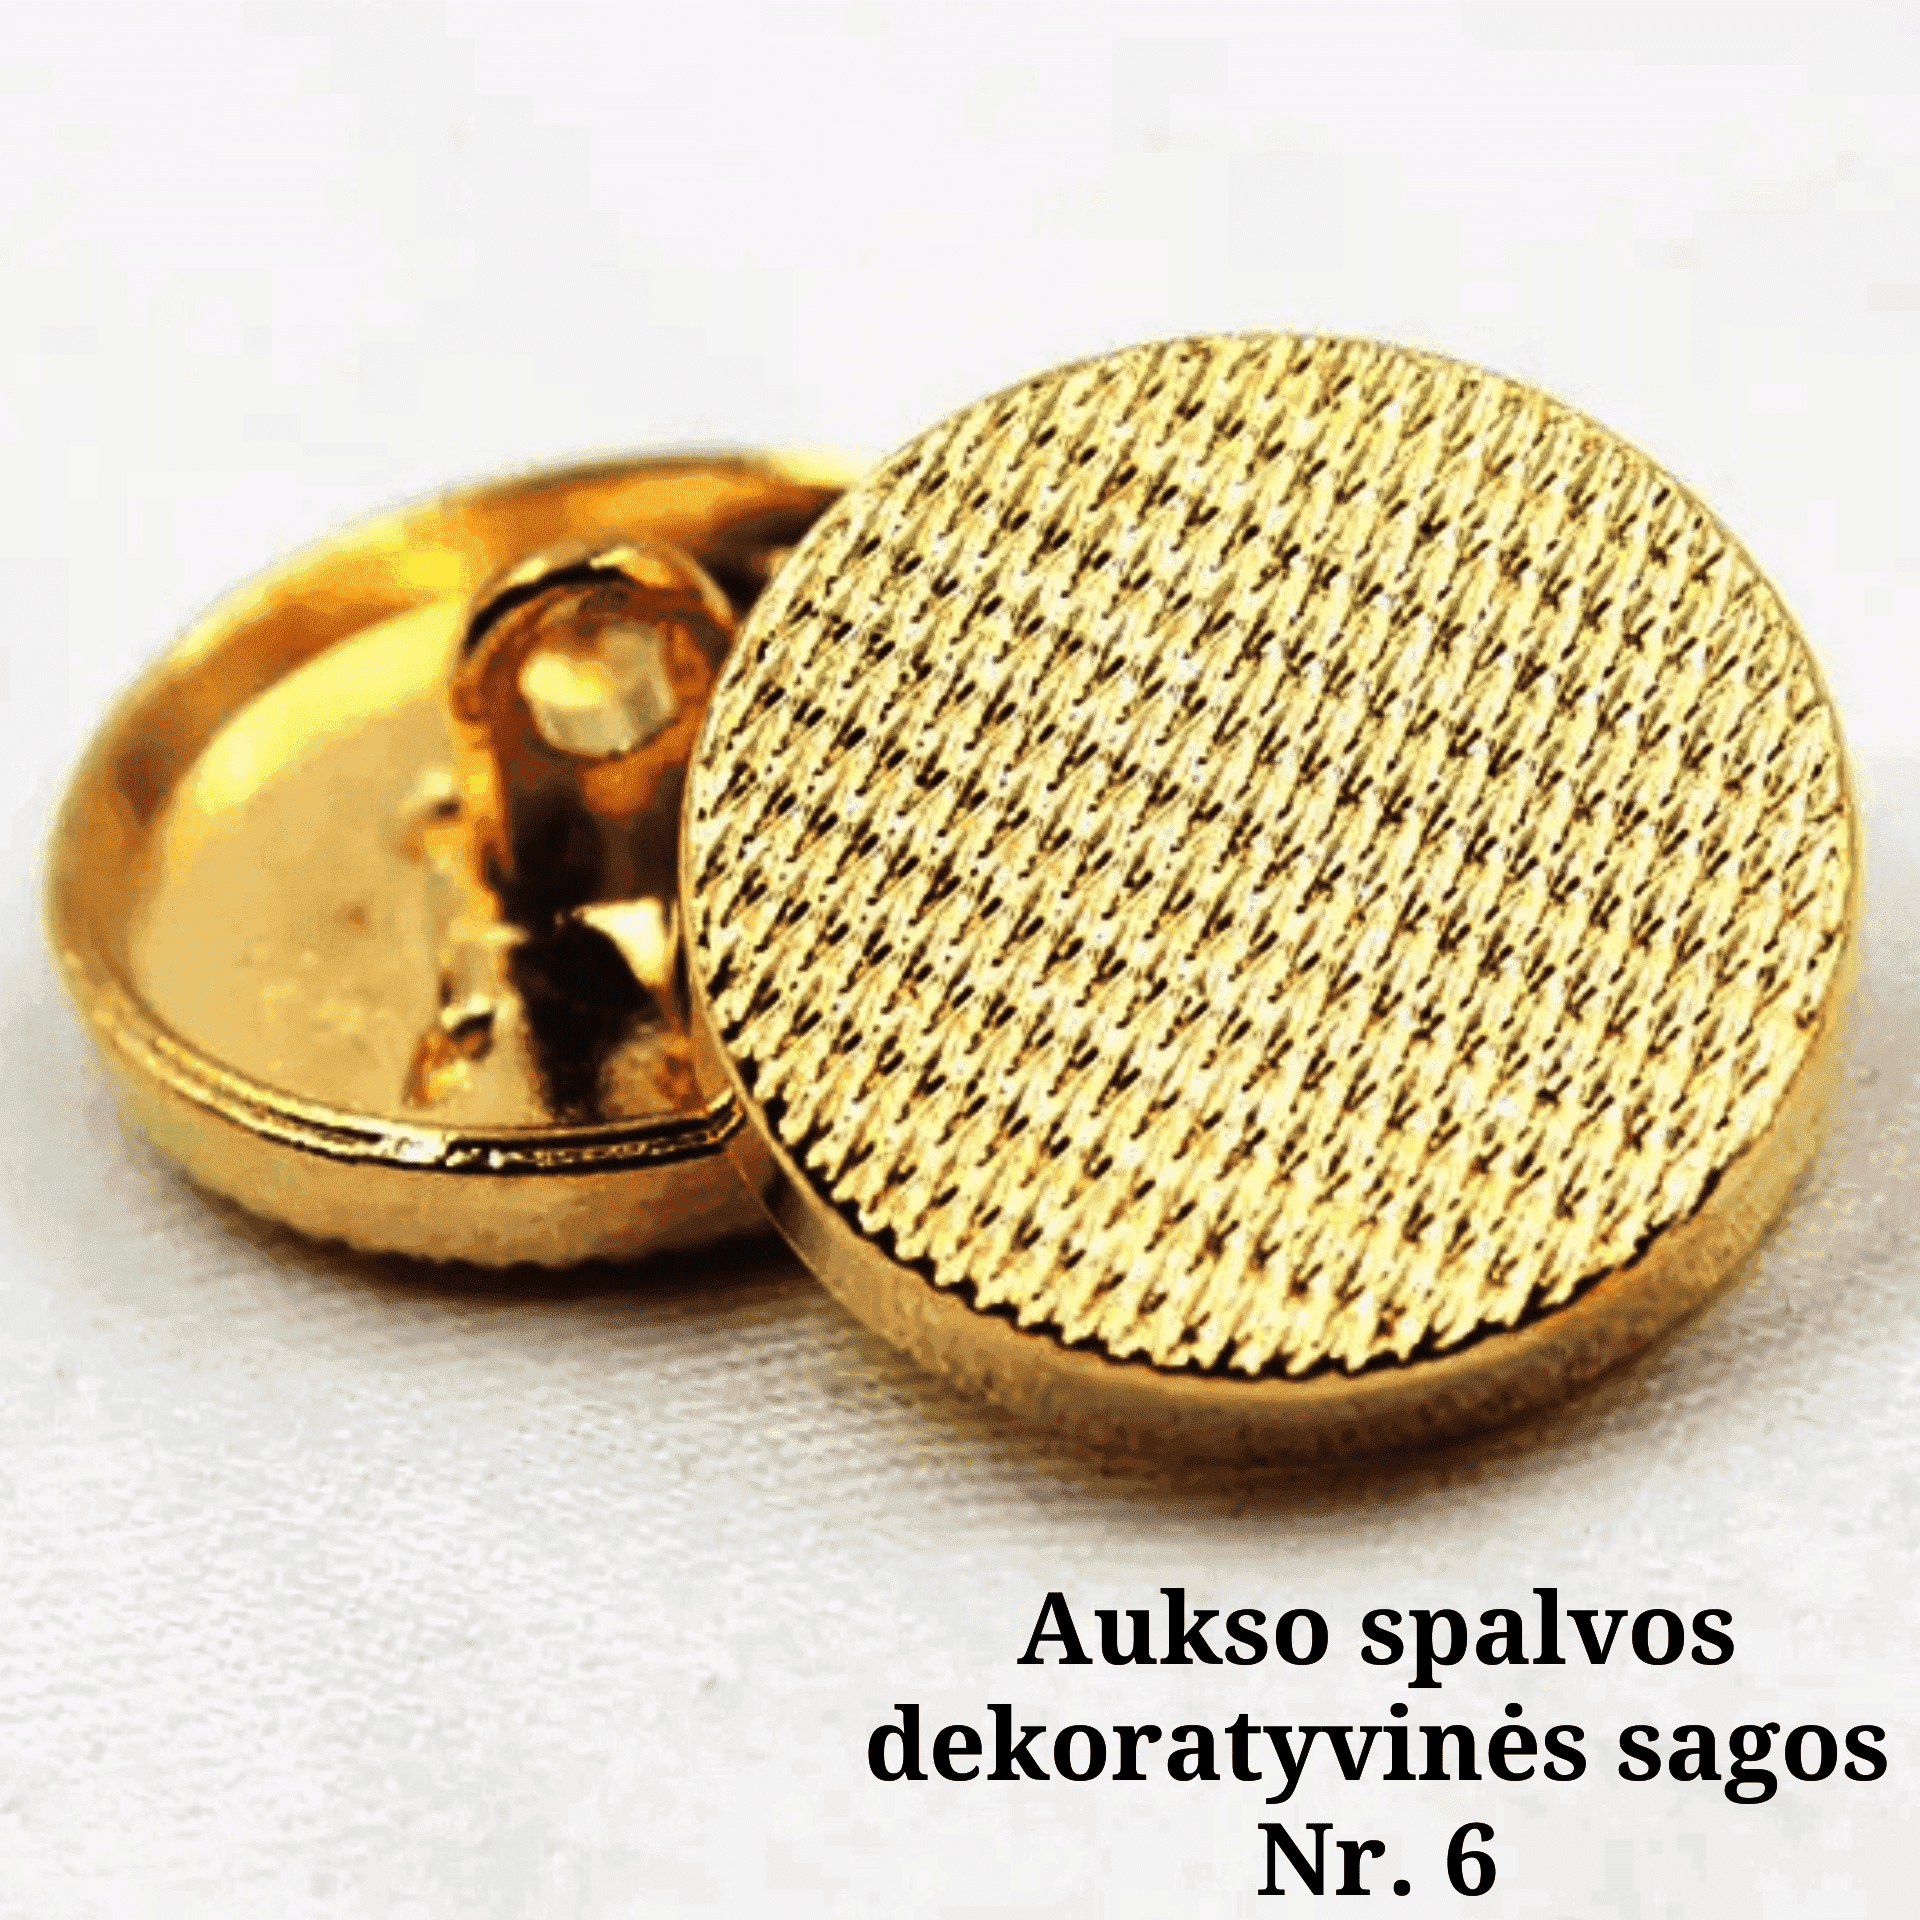 VISOS LOVOS - Aukso spalvos dekoratyvinės sagos Nr. 6